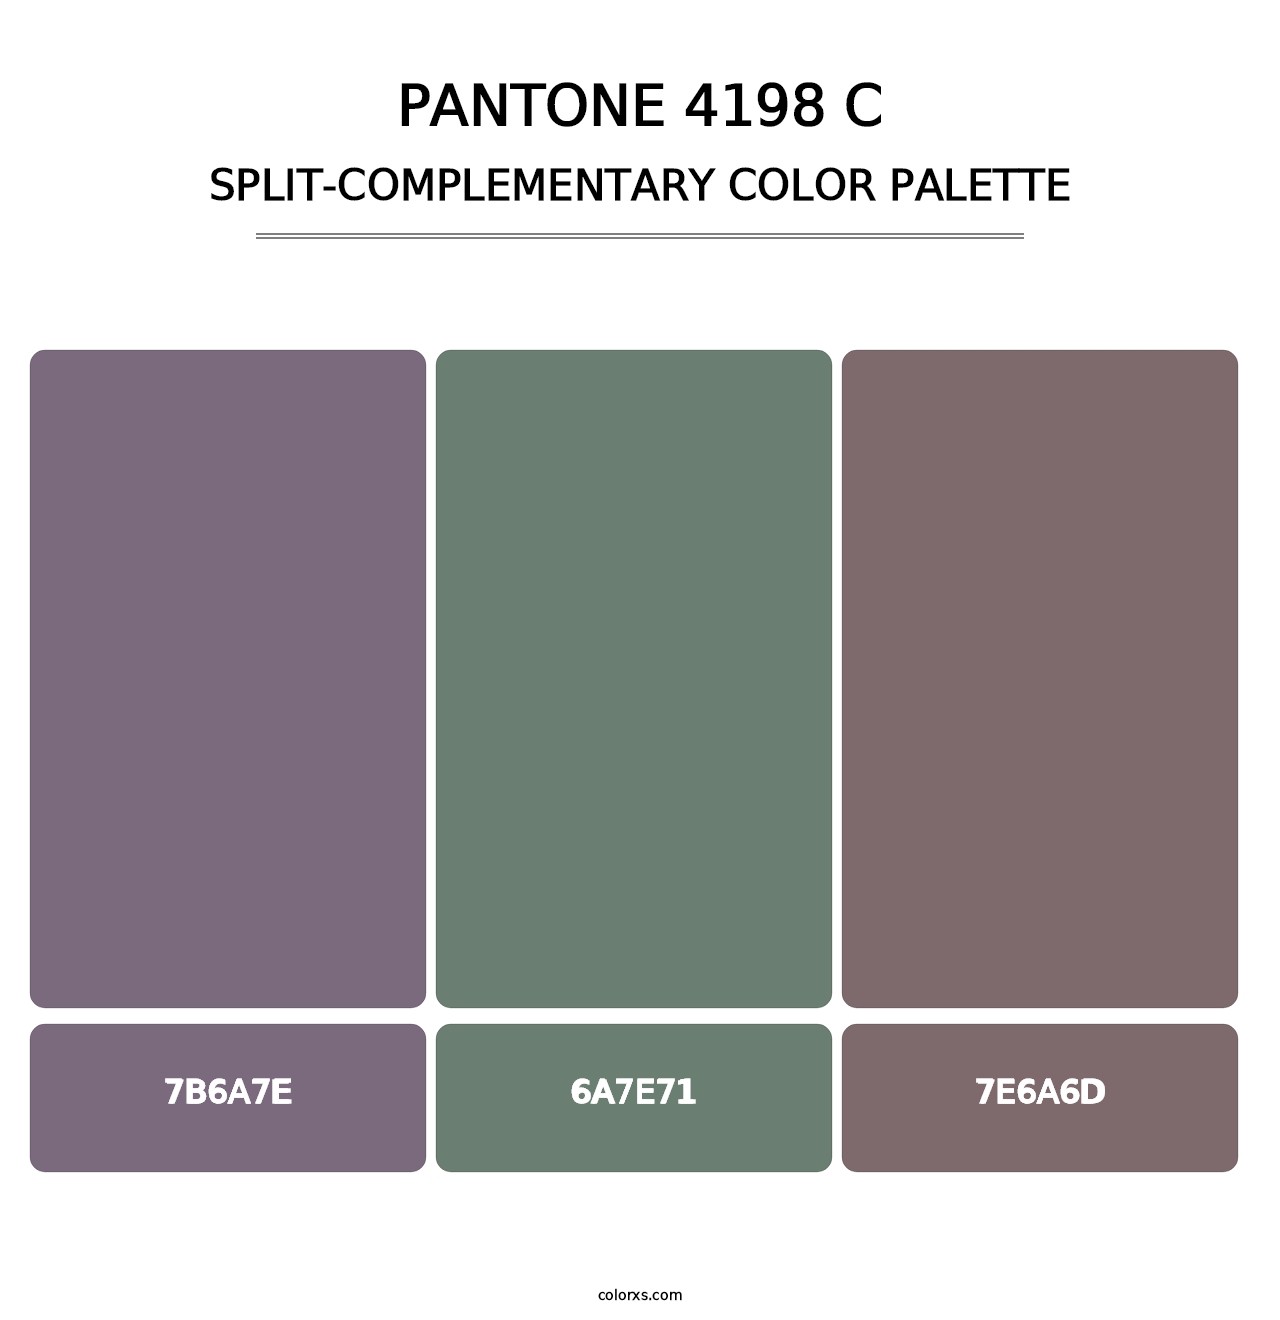 PANTONE 4198 C - Split-Complementary Color Palette